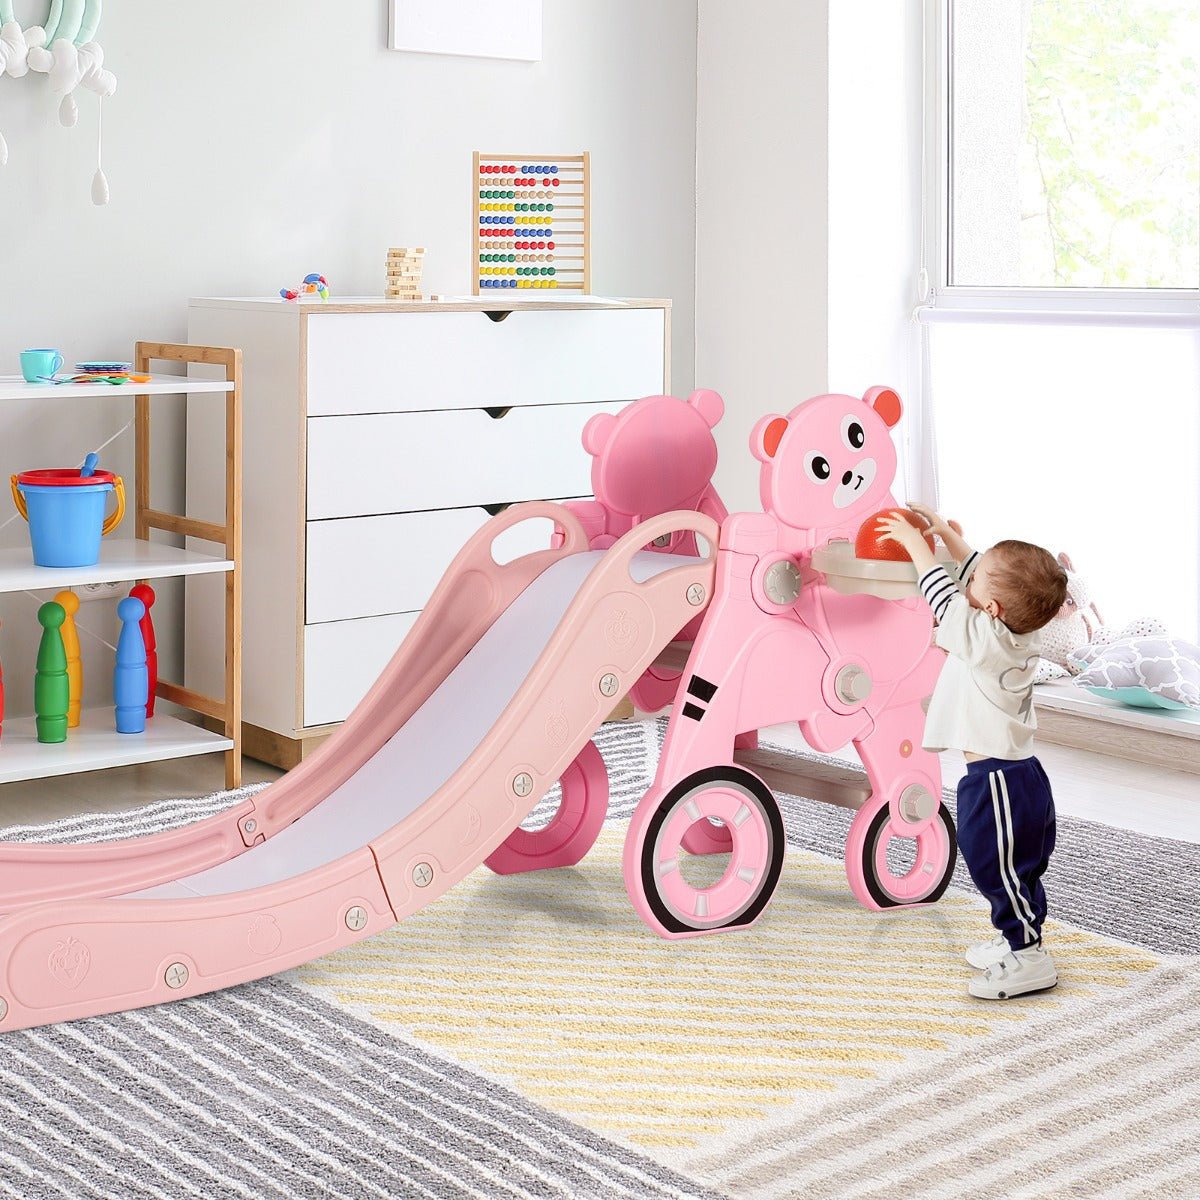 4-in-1 Baby Slide Playset - Pink Slide with Basketball Hoop